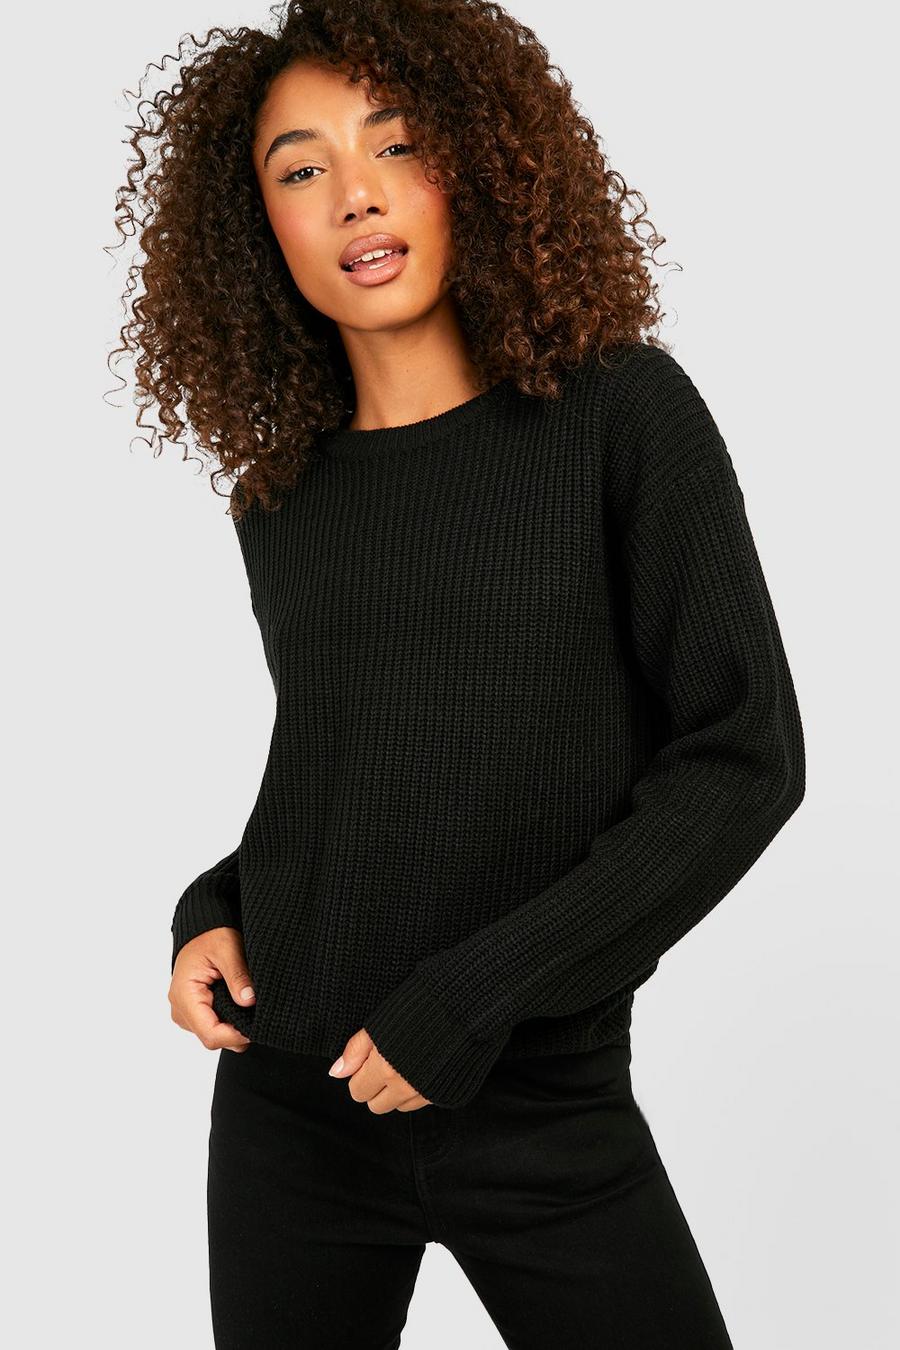 שחור סוודר סרוג עם צווארון עגול, לנשים גבוהות